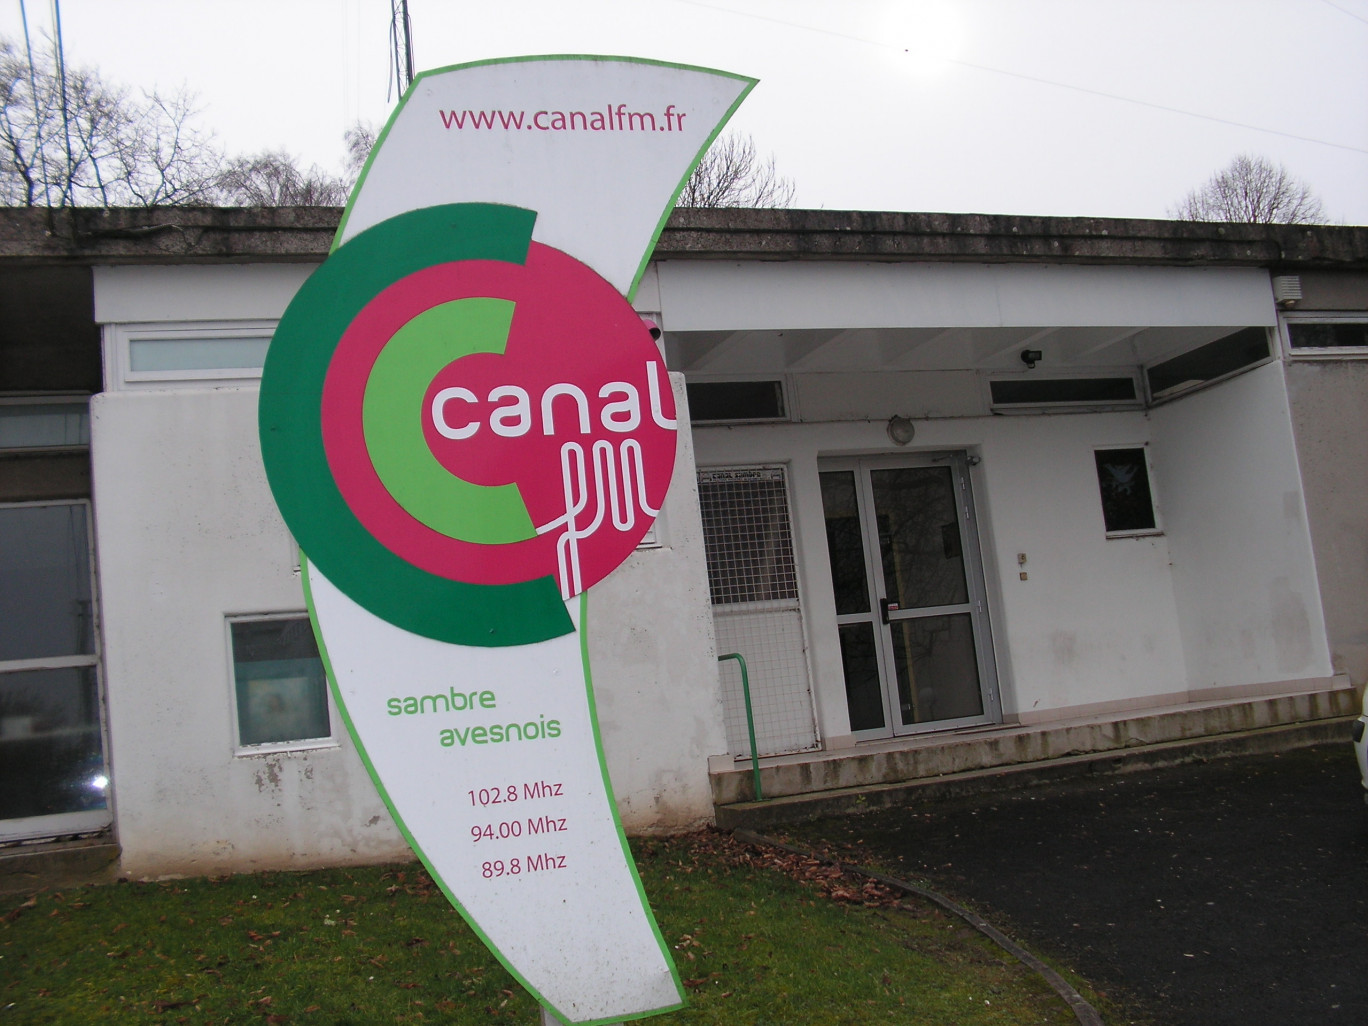 Le totem à l’entrée du bâtiment qui abrite Canal FM Sambre Avesnois. Il s’agit d’une ancienne école, en plain-pied, propriété de la ville d’Aulnoye-Aymeries.